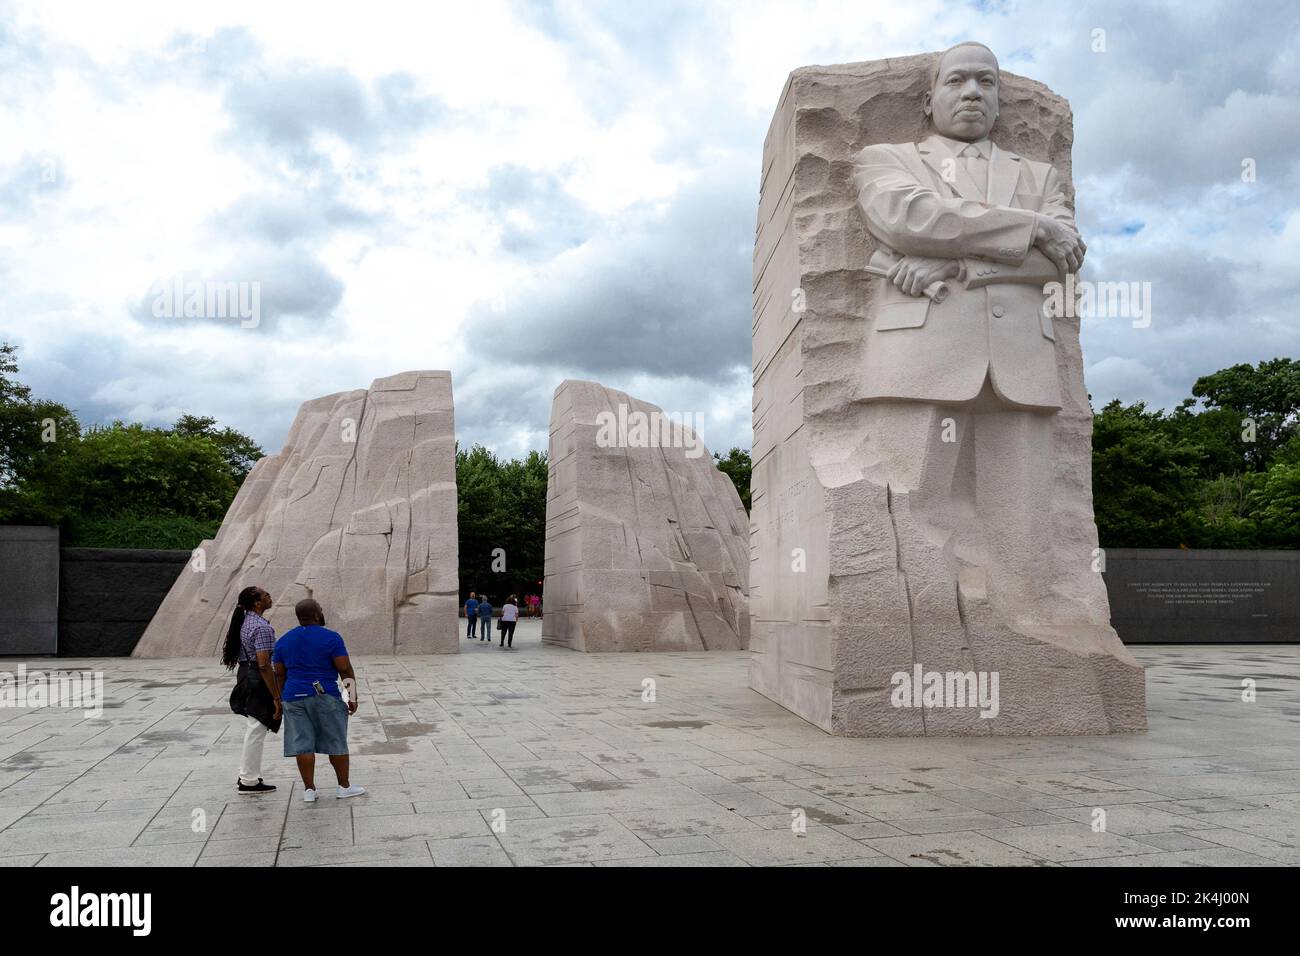 Le monument commémoratif Martin Luther King, Jr., est un monument commémoratif national situé dans le parc West Potomac, à côté du centre commercial national de Washington, D.C., aux États-Unis. Elle couvre quatre hectares et comprend la Pierre de l'espoir, une statue en granit du chef du mouvement des droits civils Martin Luther King Jr. Sculptée par le sculpteur Lei Yixin. L'inspiration pour la conception du mémorial est une ligne du discours de King « J'ai un rêve » : « hors de la montagne du désespoir, une pierre d'espoir ». Le mémorial a été ouvert au public à 22 août 2011, après plus de deux décennies de planification, de collecte de fonds et de construction. Banque D'Images